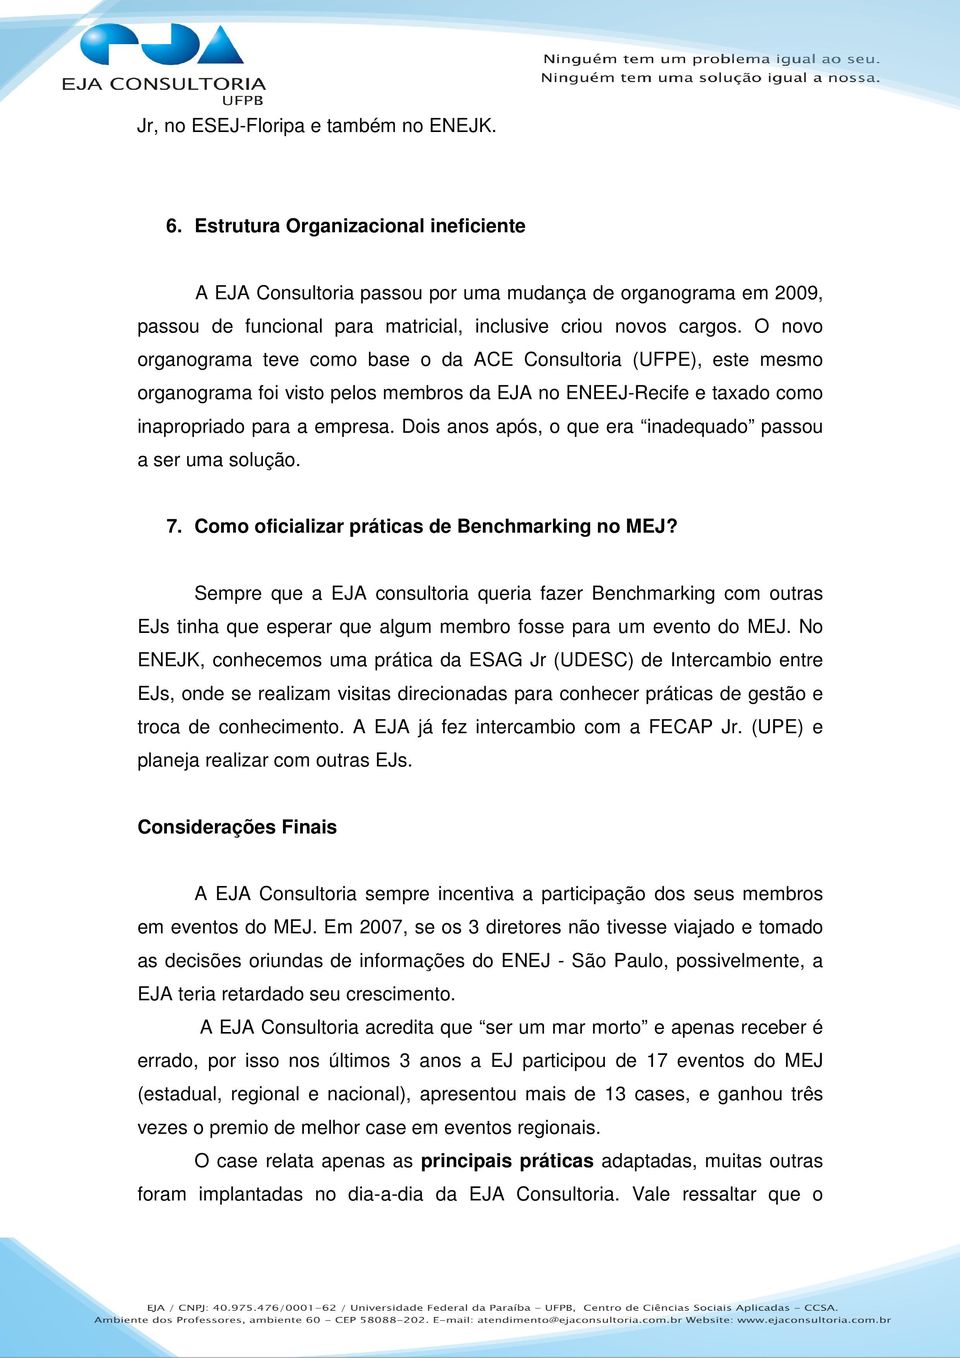 O novo organograma teve como base o da ACE Consultoria (UFPE), este mesmo organograma foi visto pelos membros da EJA no ENEEJ-Recife e taxado como inapropriado para a empresa.